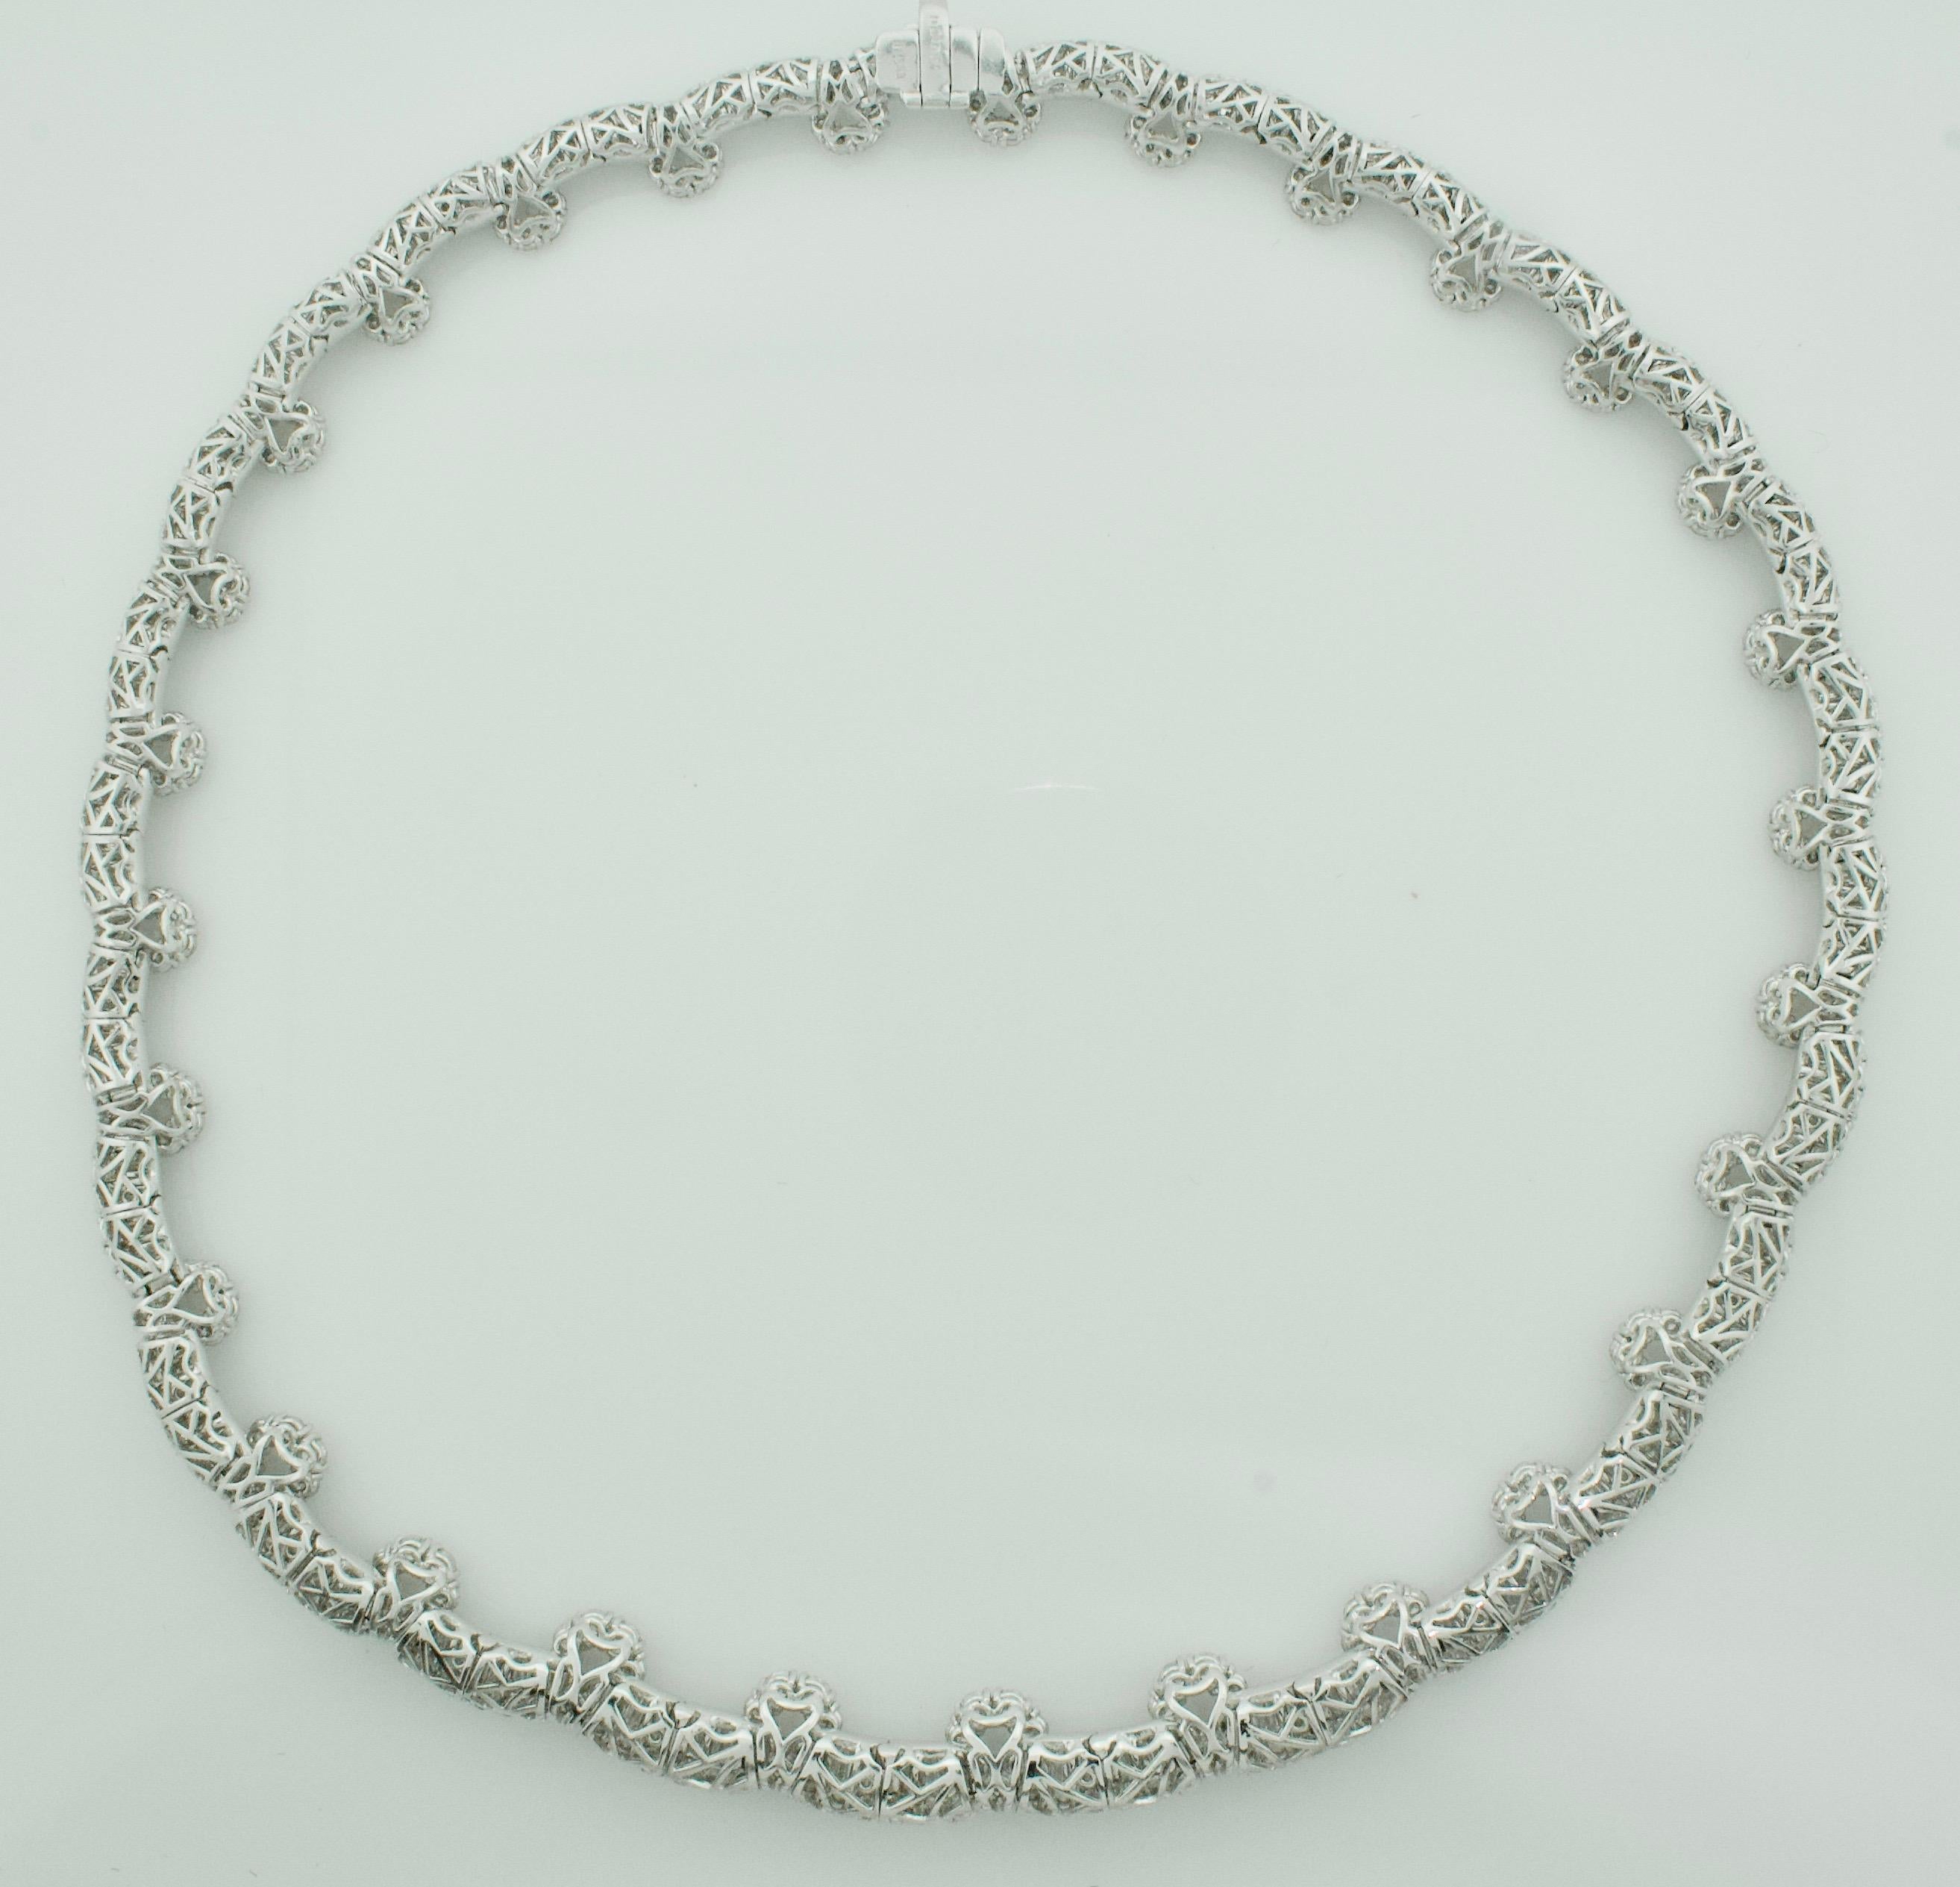 Baguette Cut Important Dynamic Diamond Necklace in Platinum 24.07 Carat For Sale